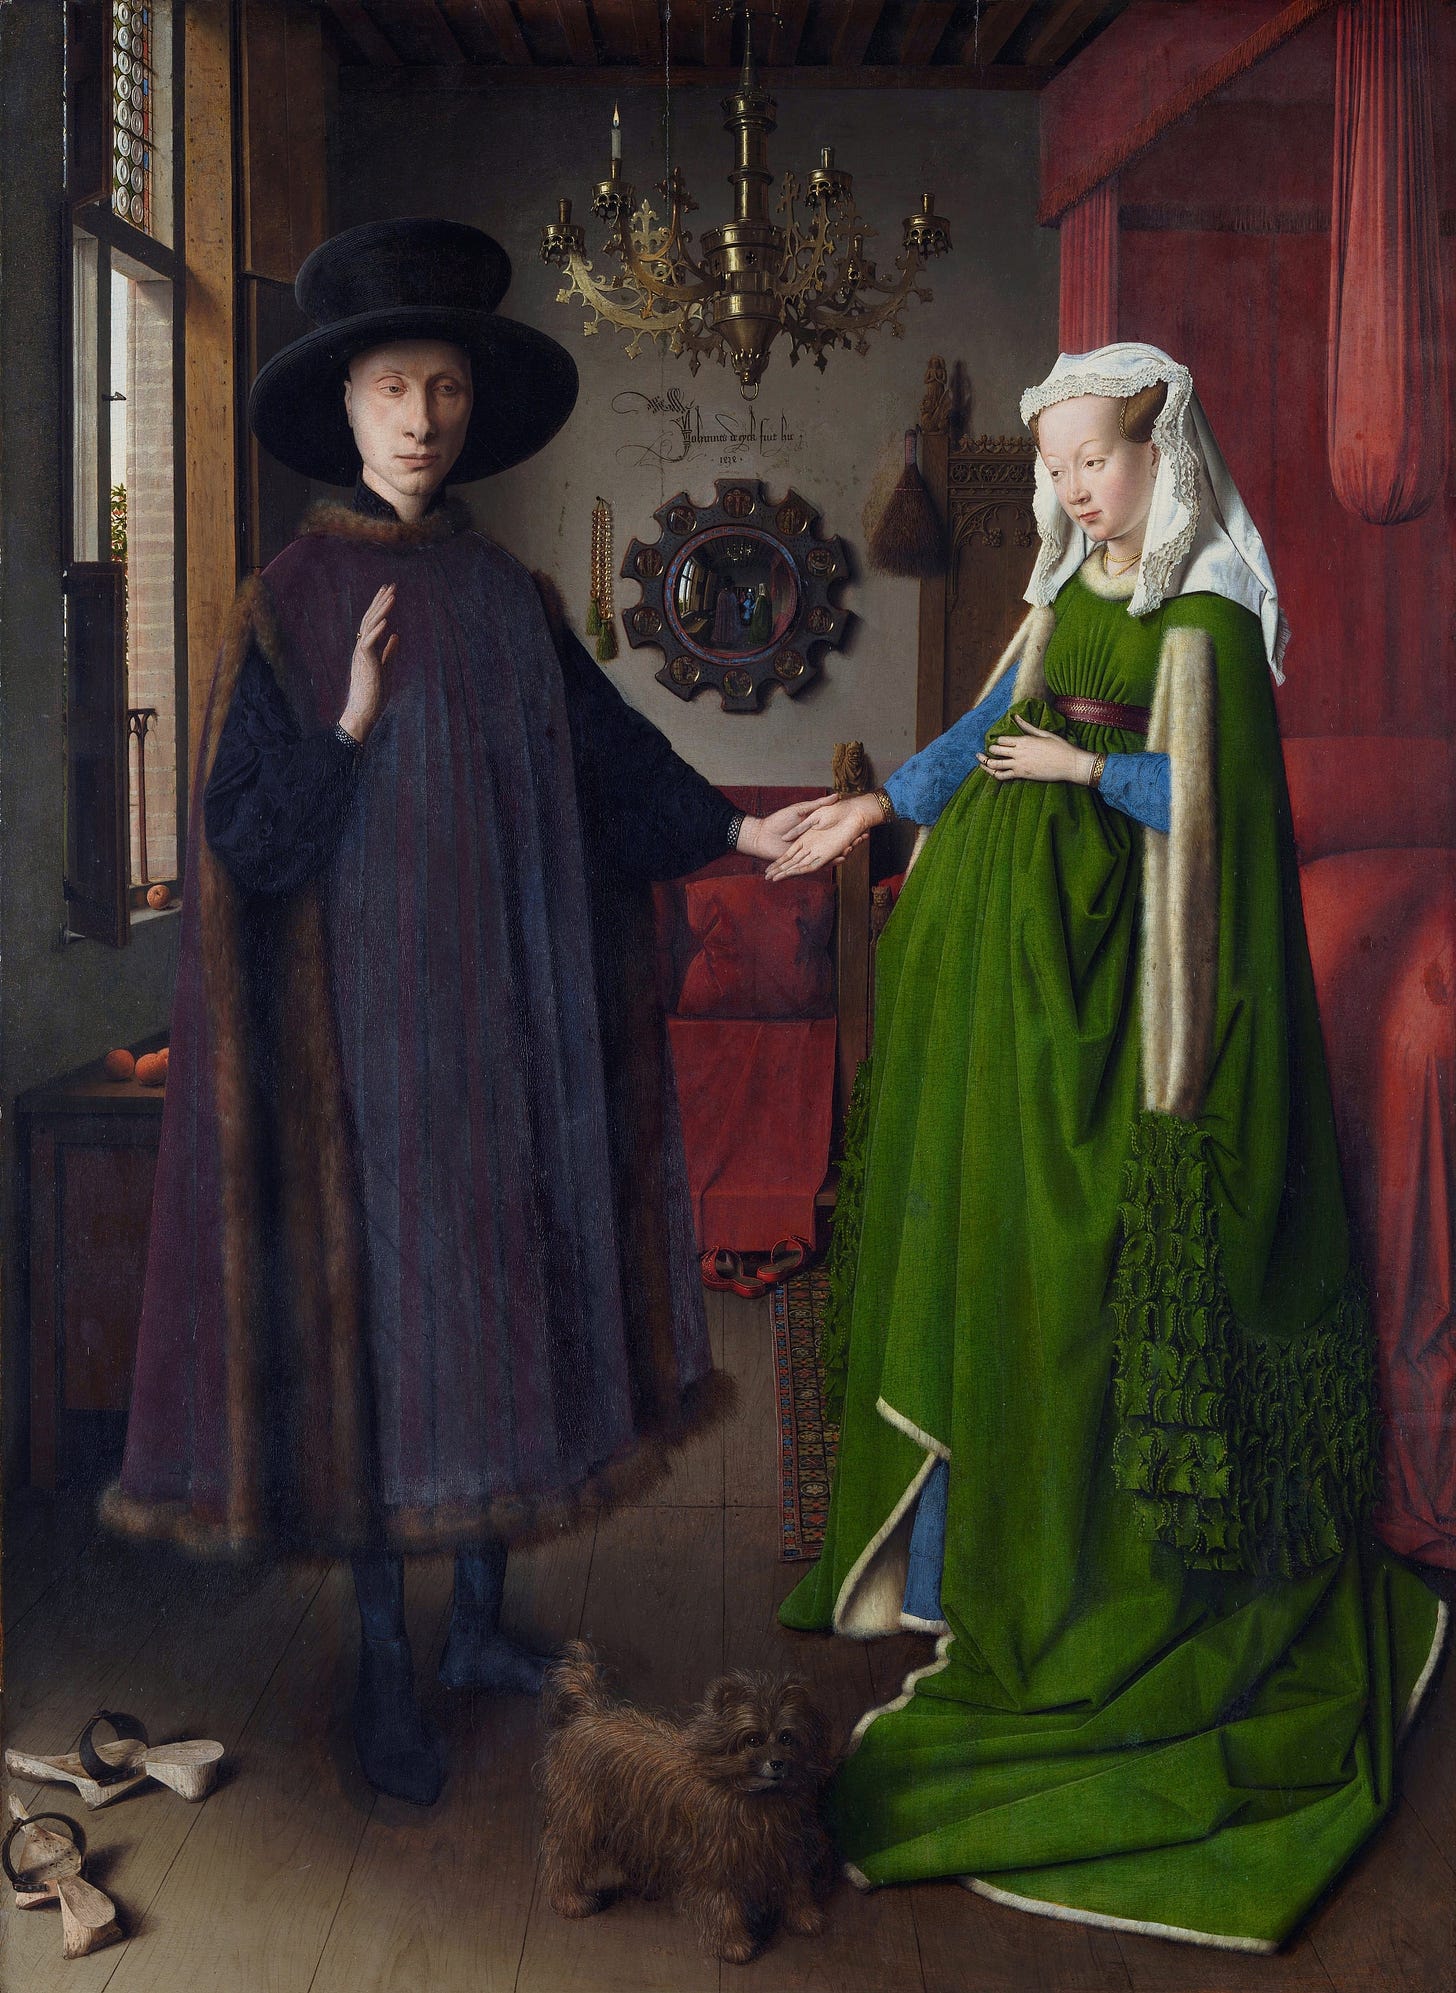 Jan van Eyck Art